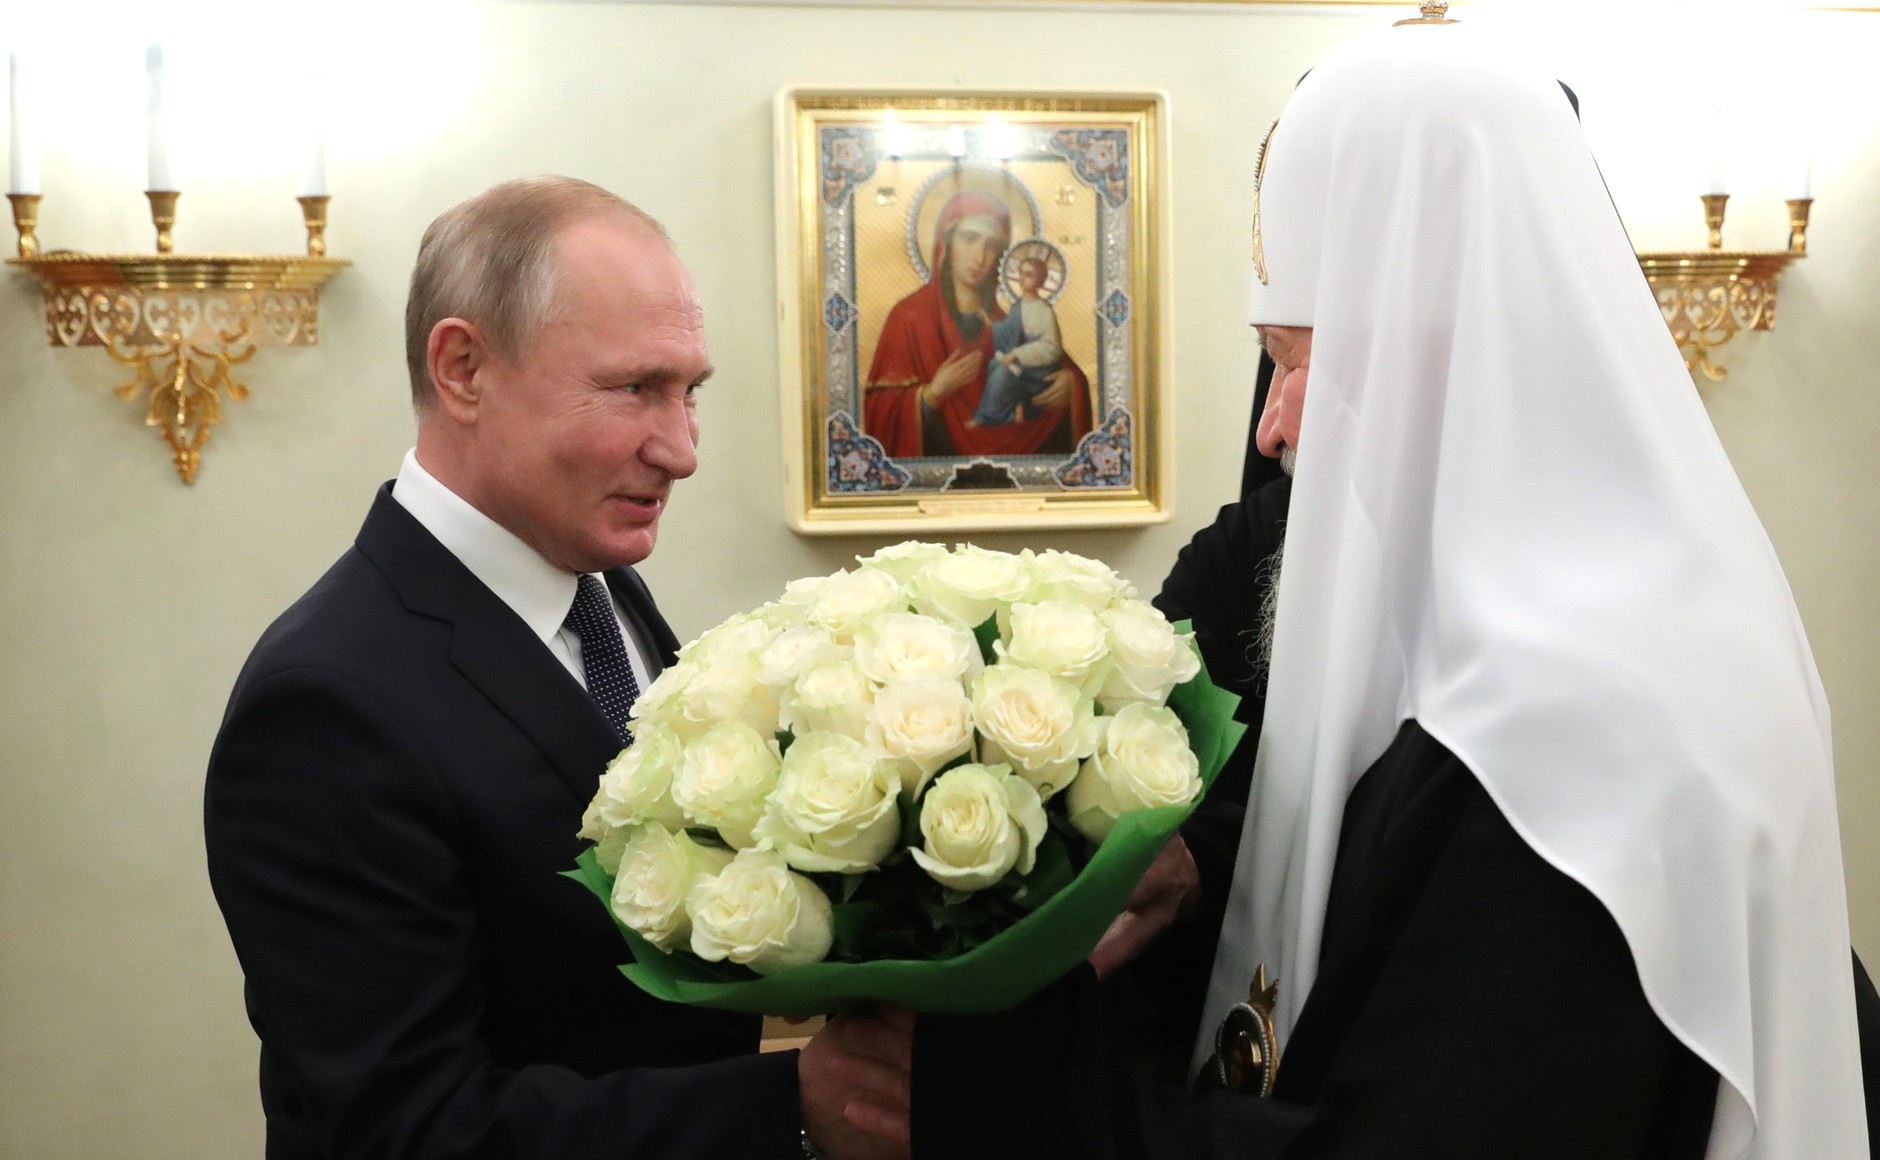 Поздравление От Путина Кириллу